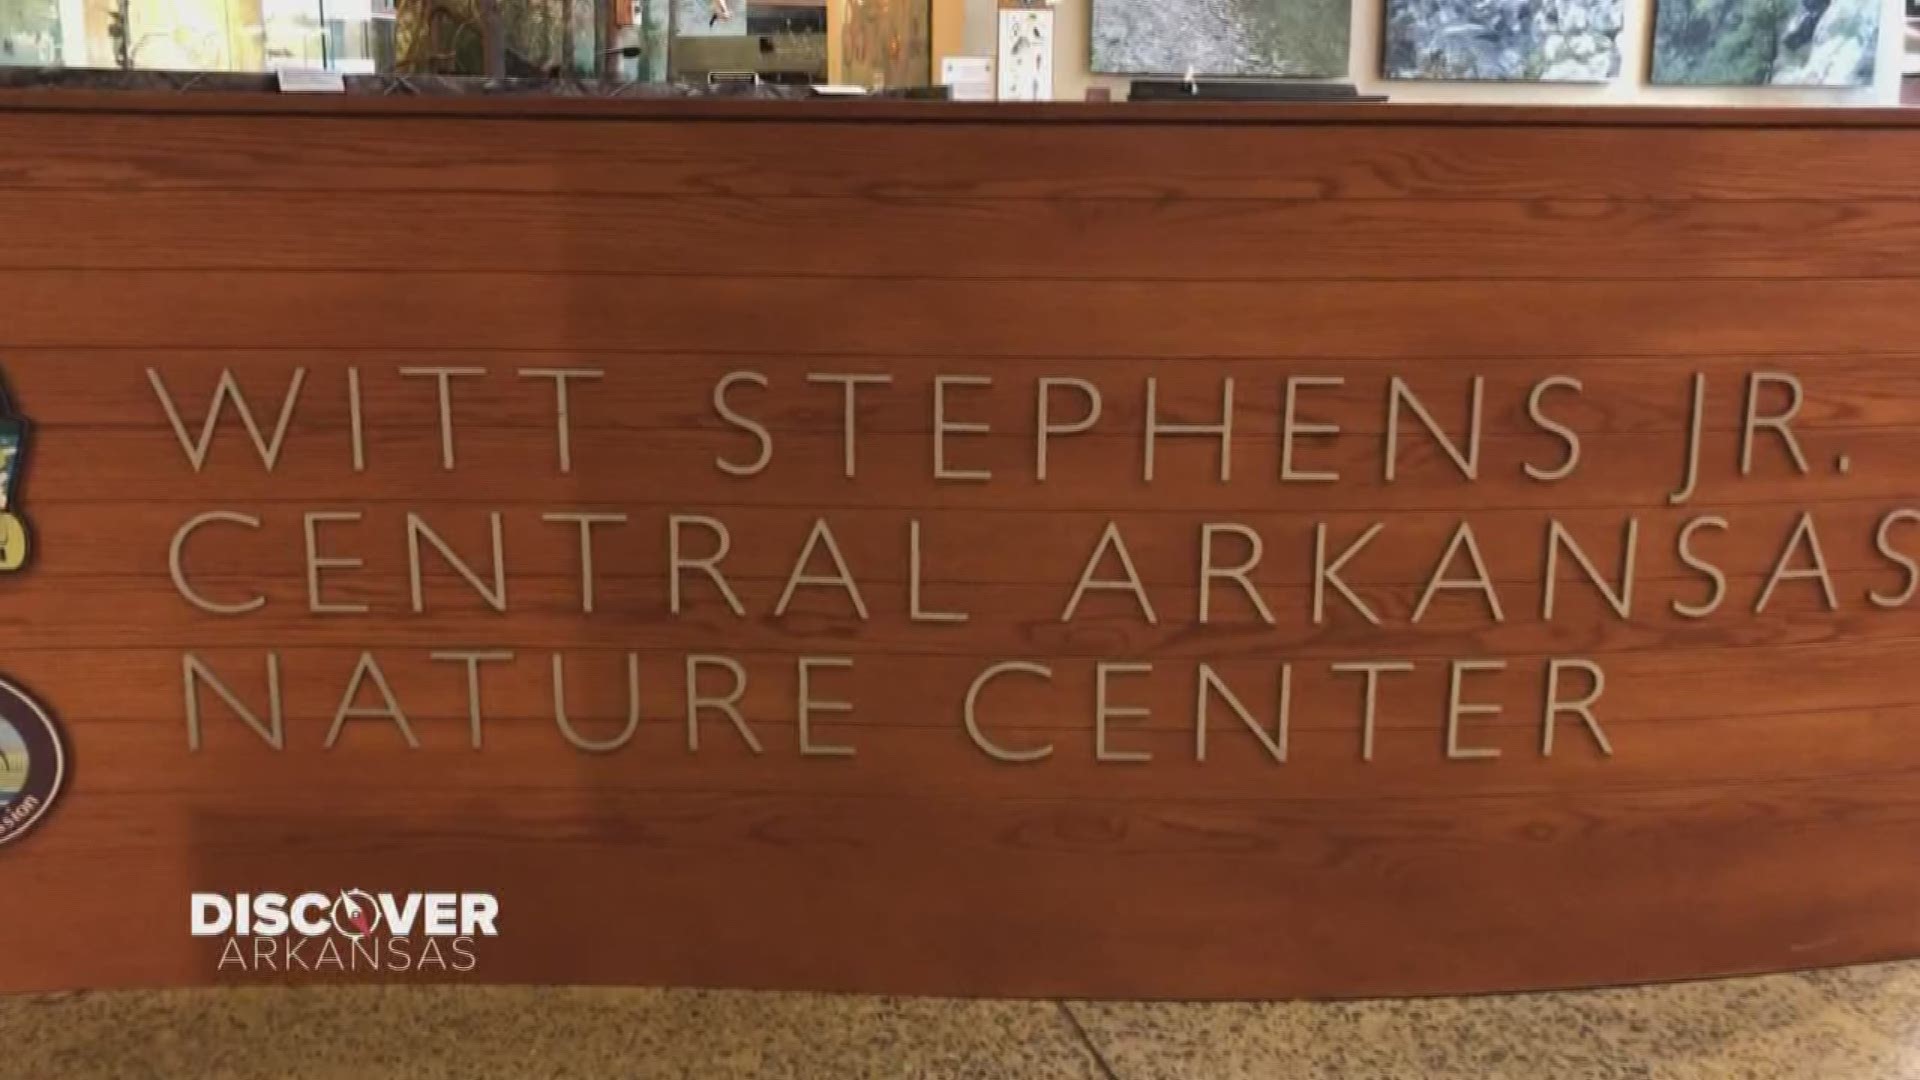 Discover Arkansas | Witt Stephens Jr. Nature Center